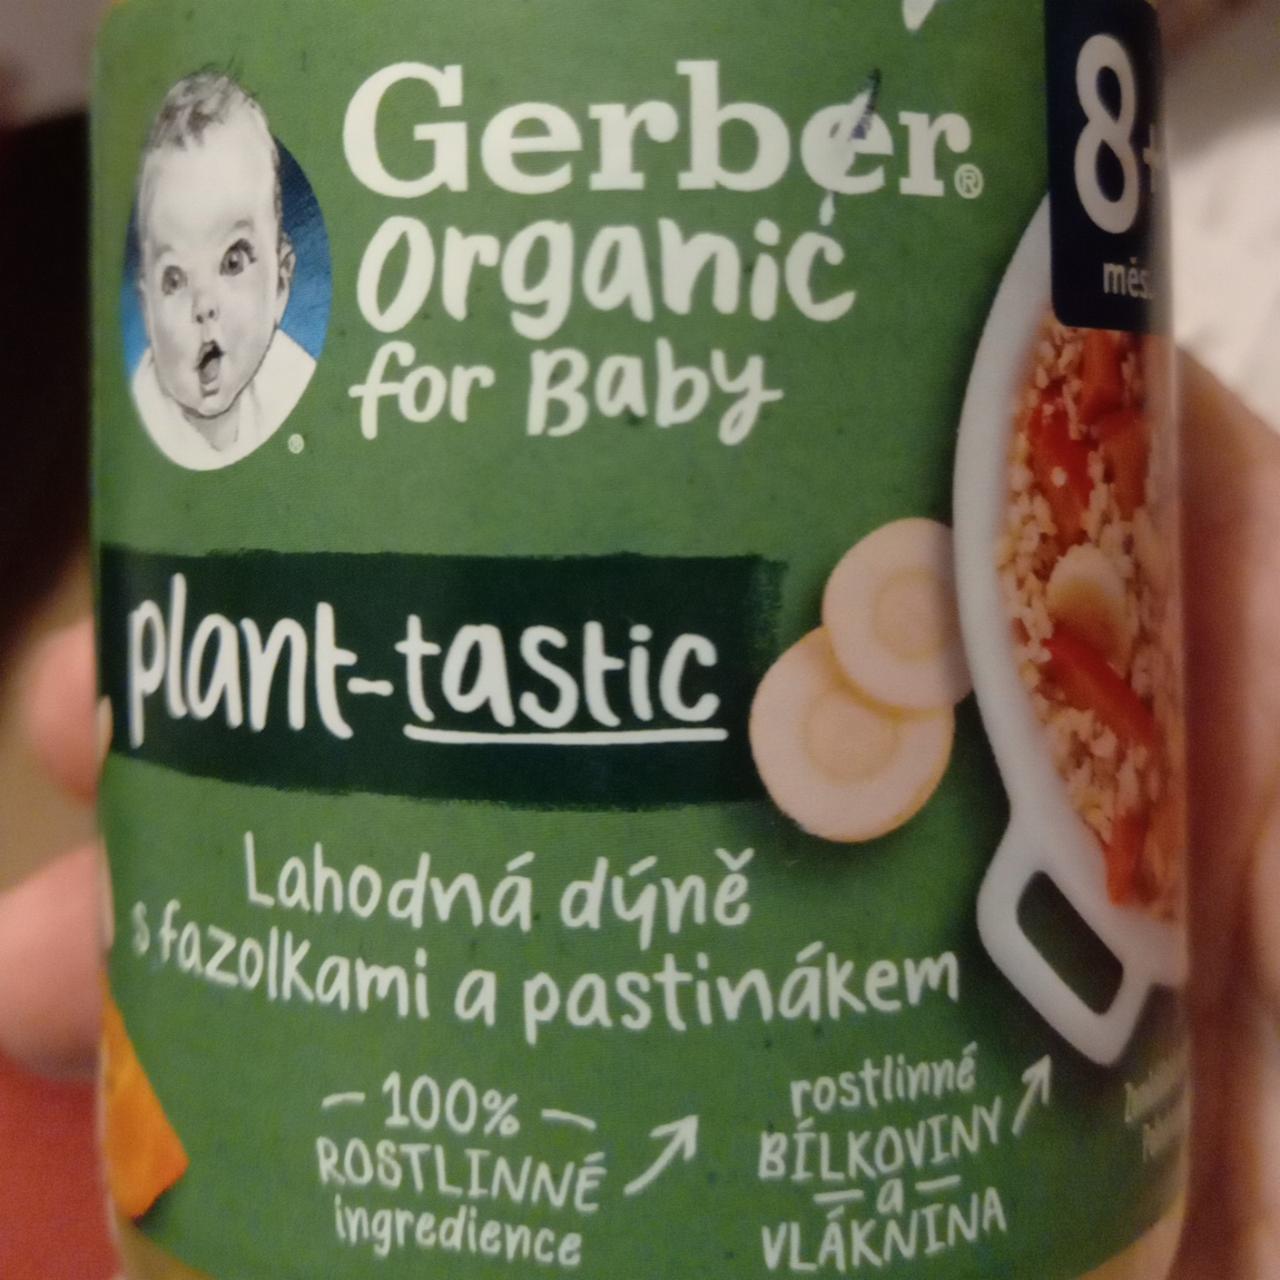 Fotografie - Lahodná dýně s fazolkami a pastiňákem Gerber organic for baby plant-tastic